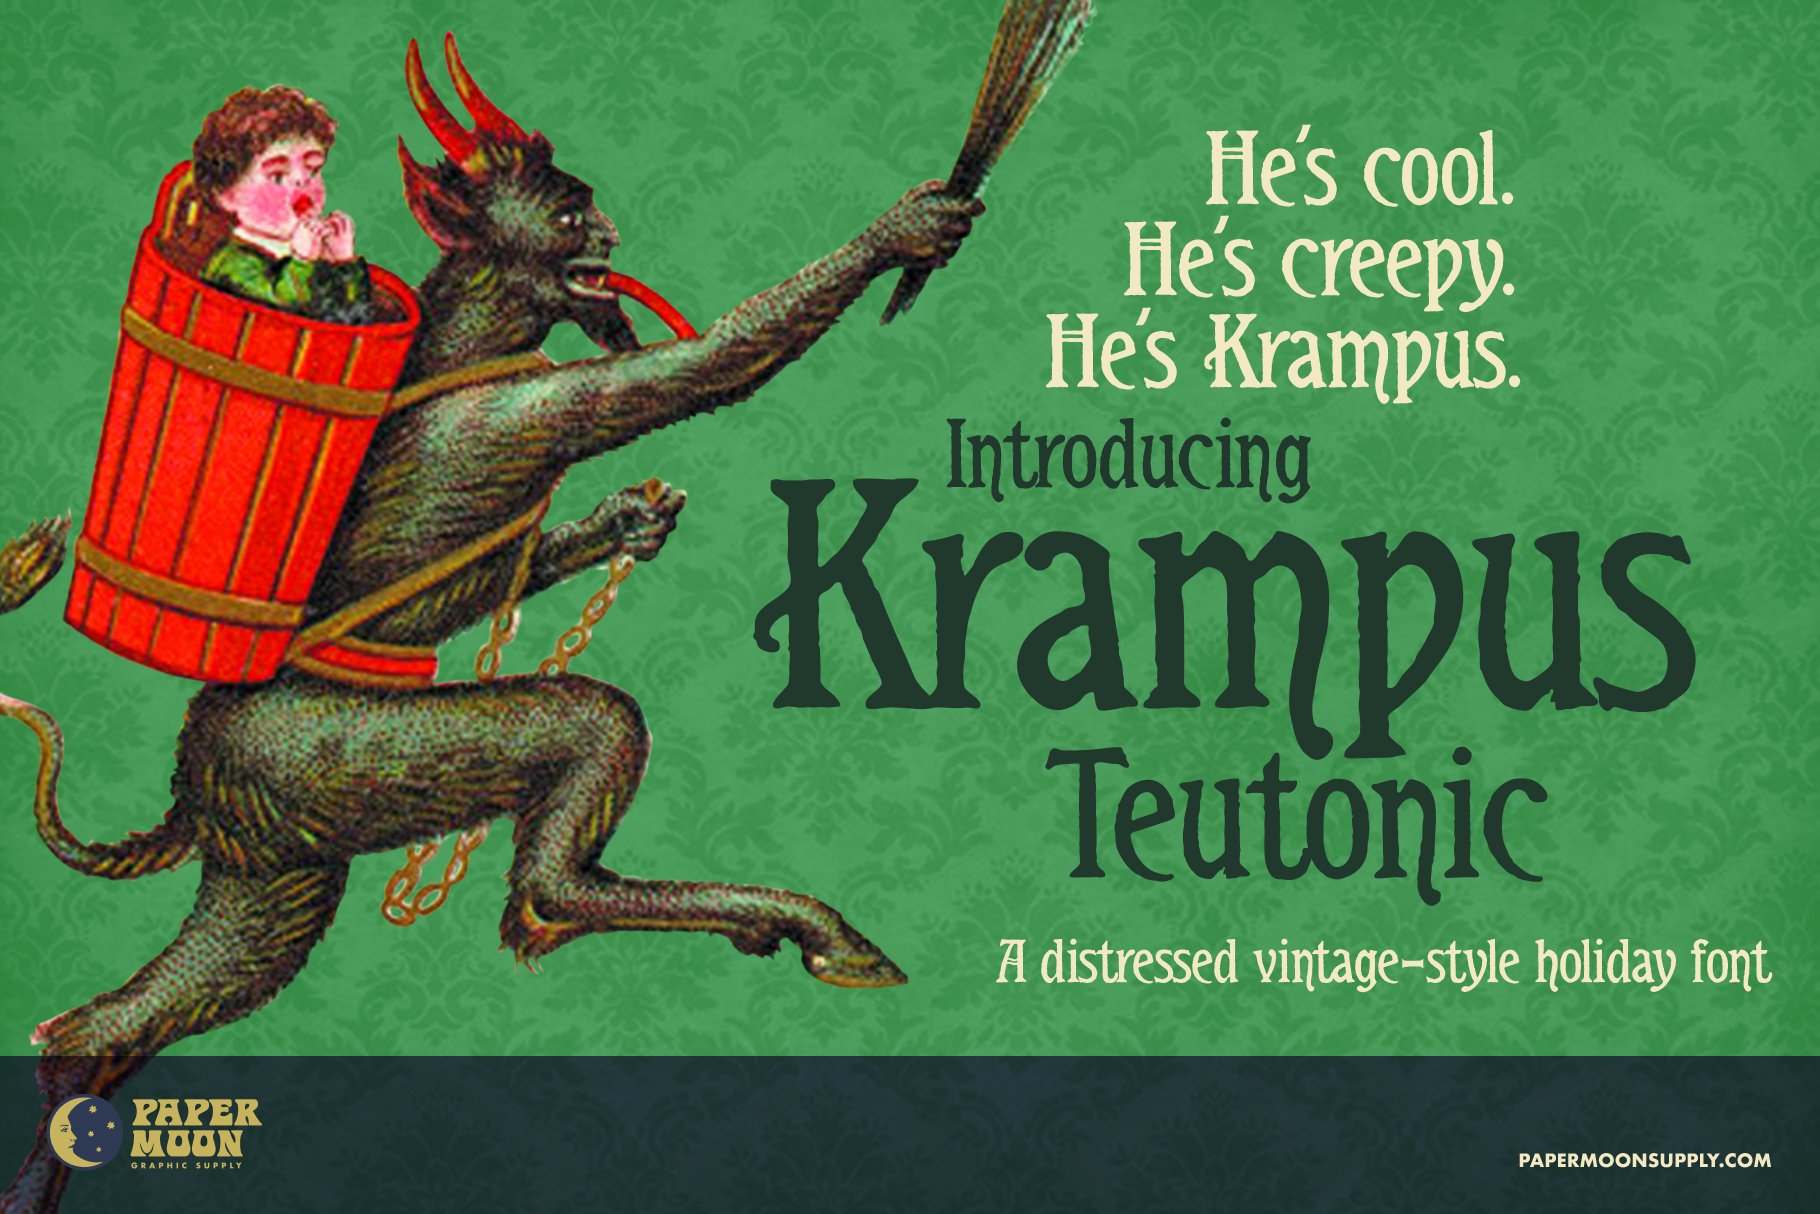 Krampus Teutonic Vintage Font cover image.